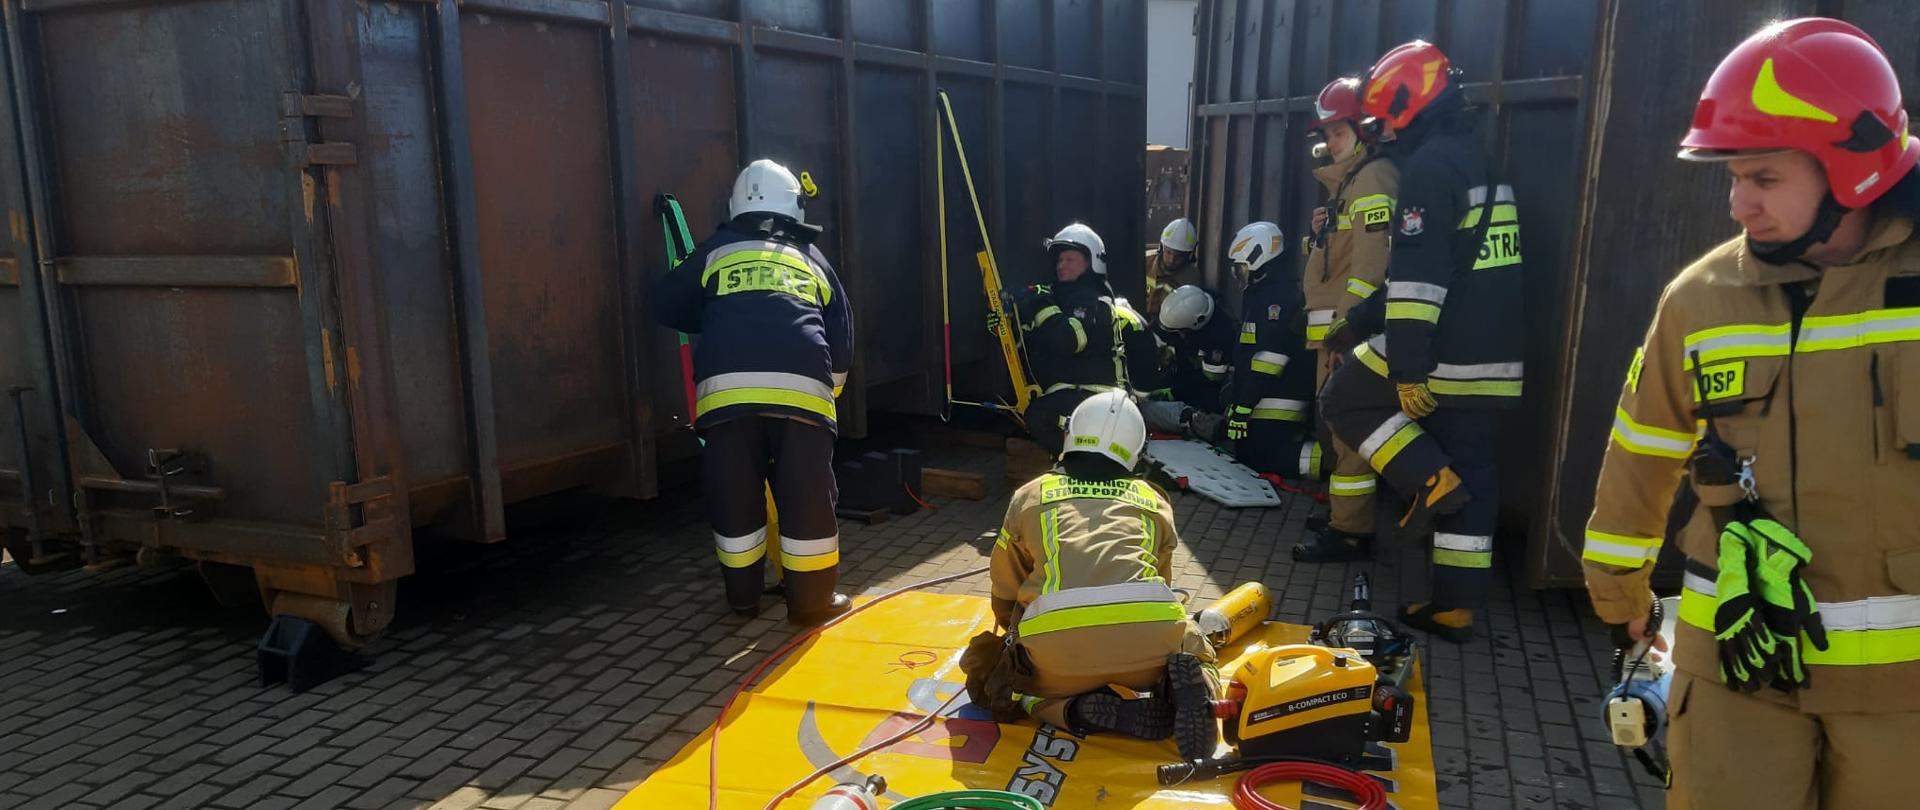 Na zdjęciach widać strażaków podczas ćwiczeń, w tle metalowe kontenery, n pierwszym planie rozłożona żółta mata ze sprzętem hydraulicznym